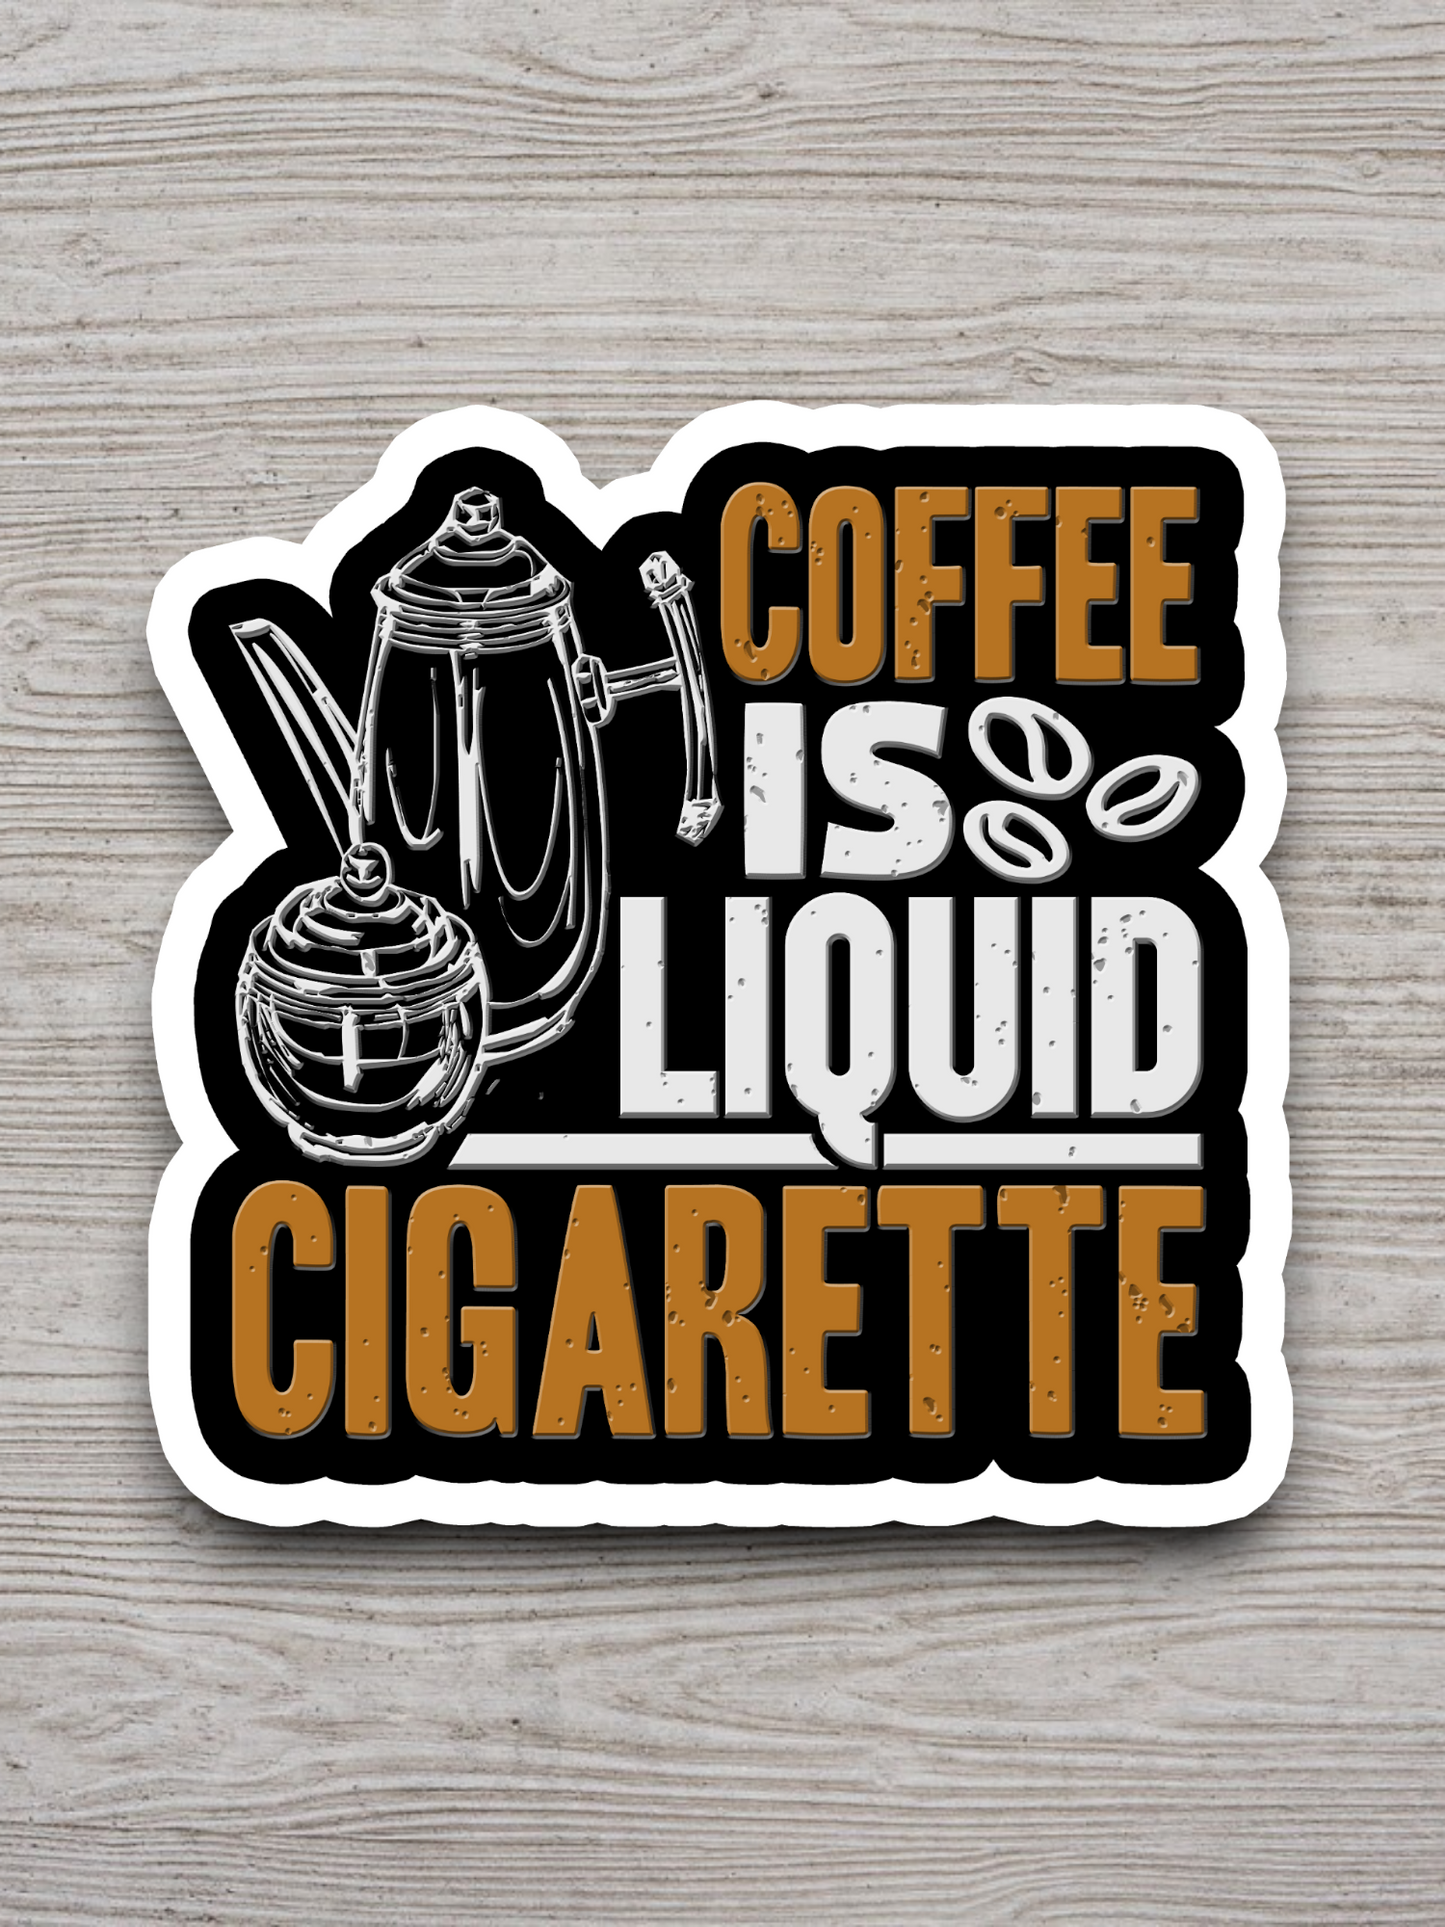 Coffee is Liquid Cigarette - Coffee Sticker